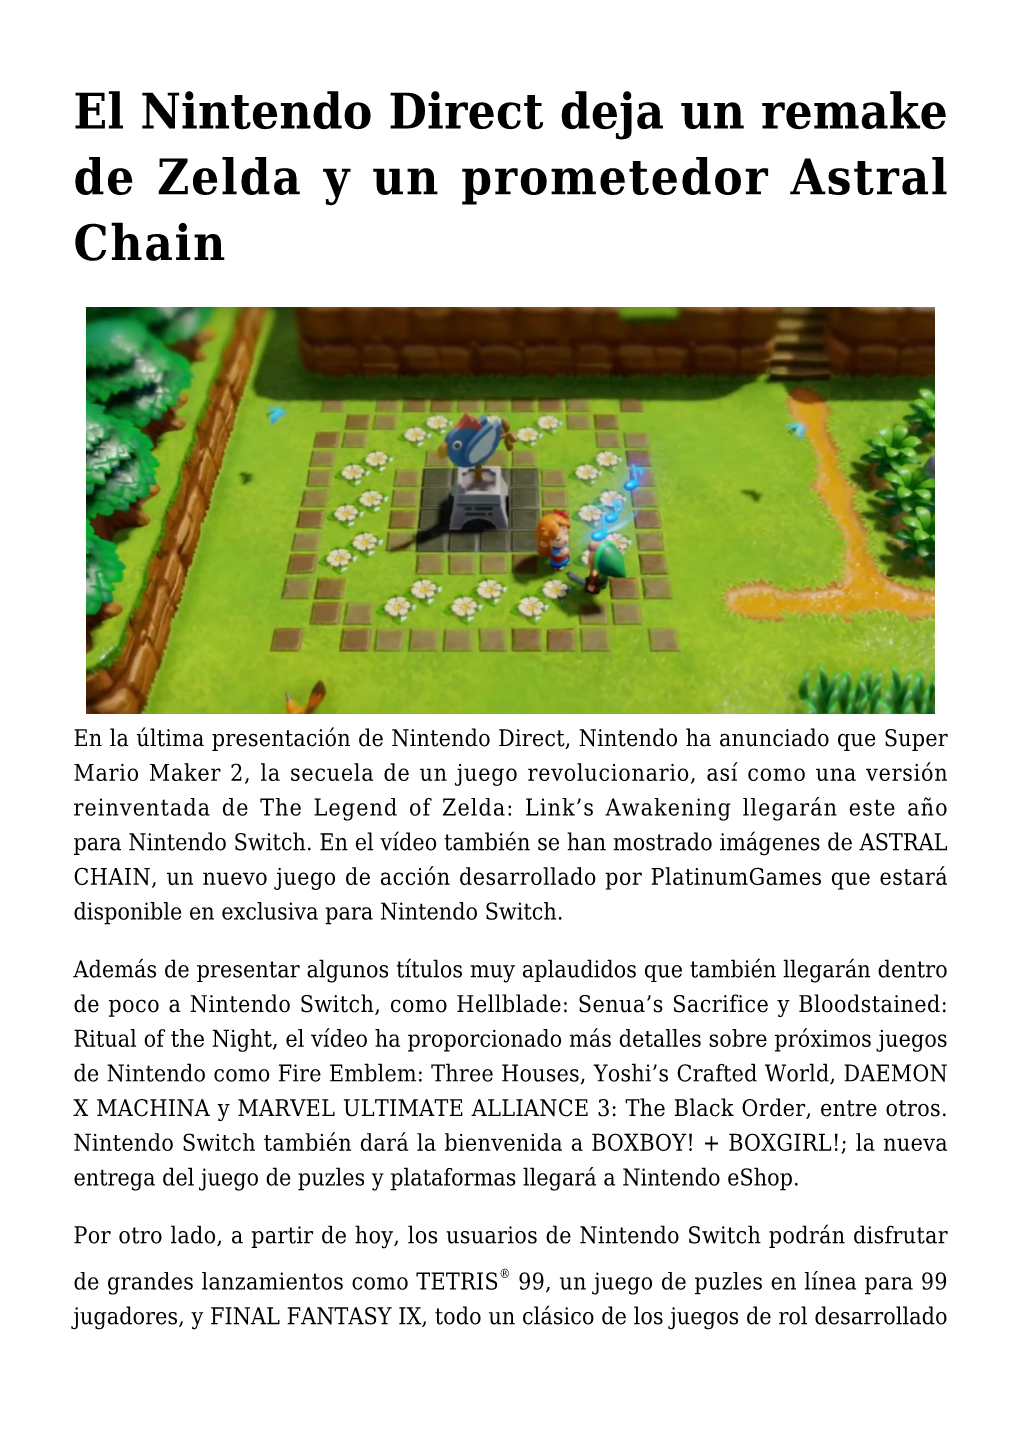 El Nintendo Direct Deja Un Remake De Zelda Y Un Prometedor Astral Chain